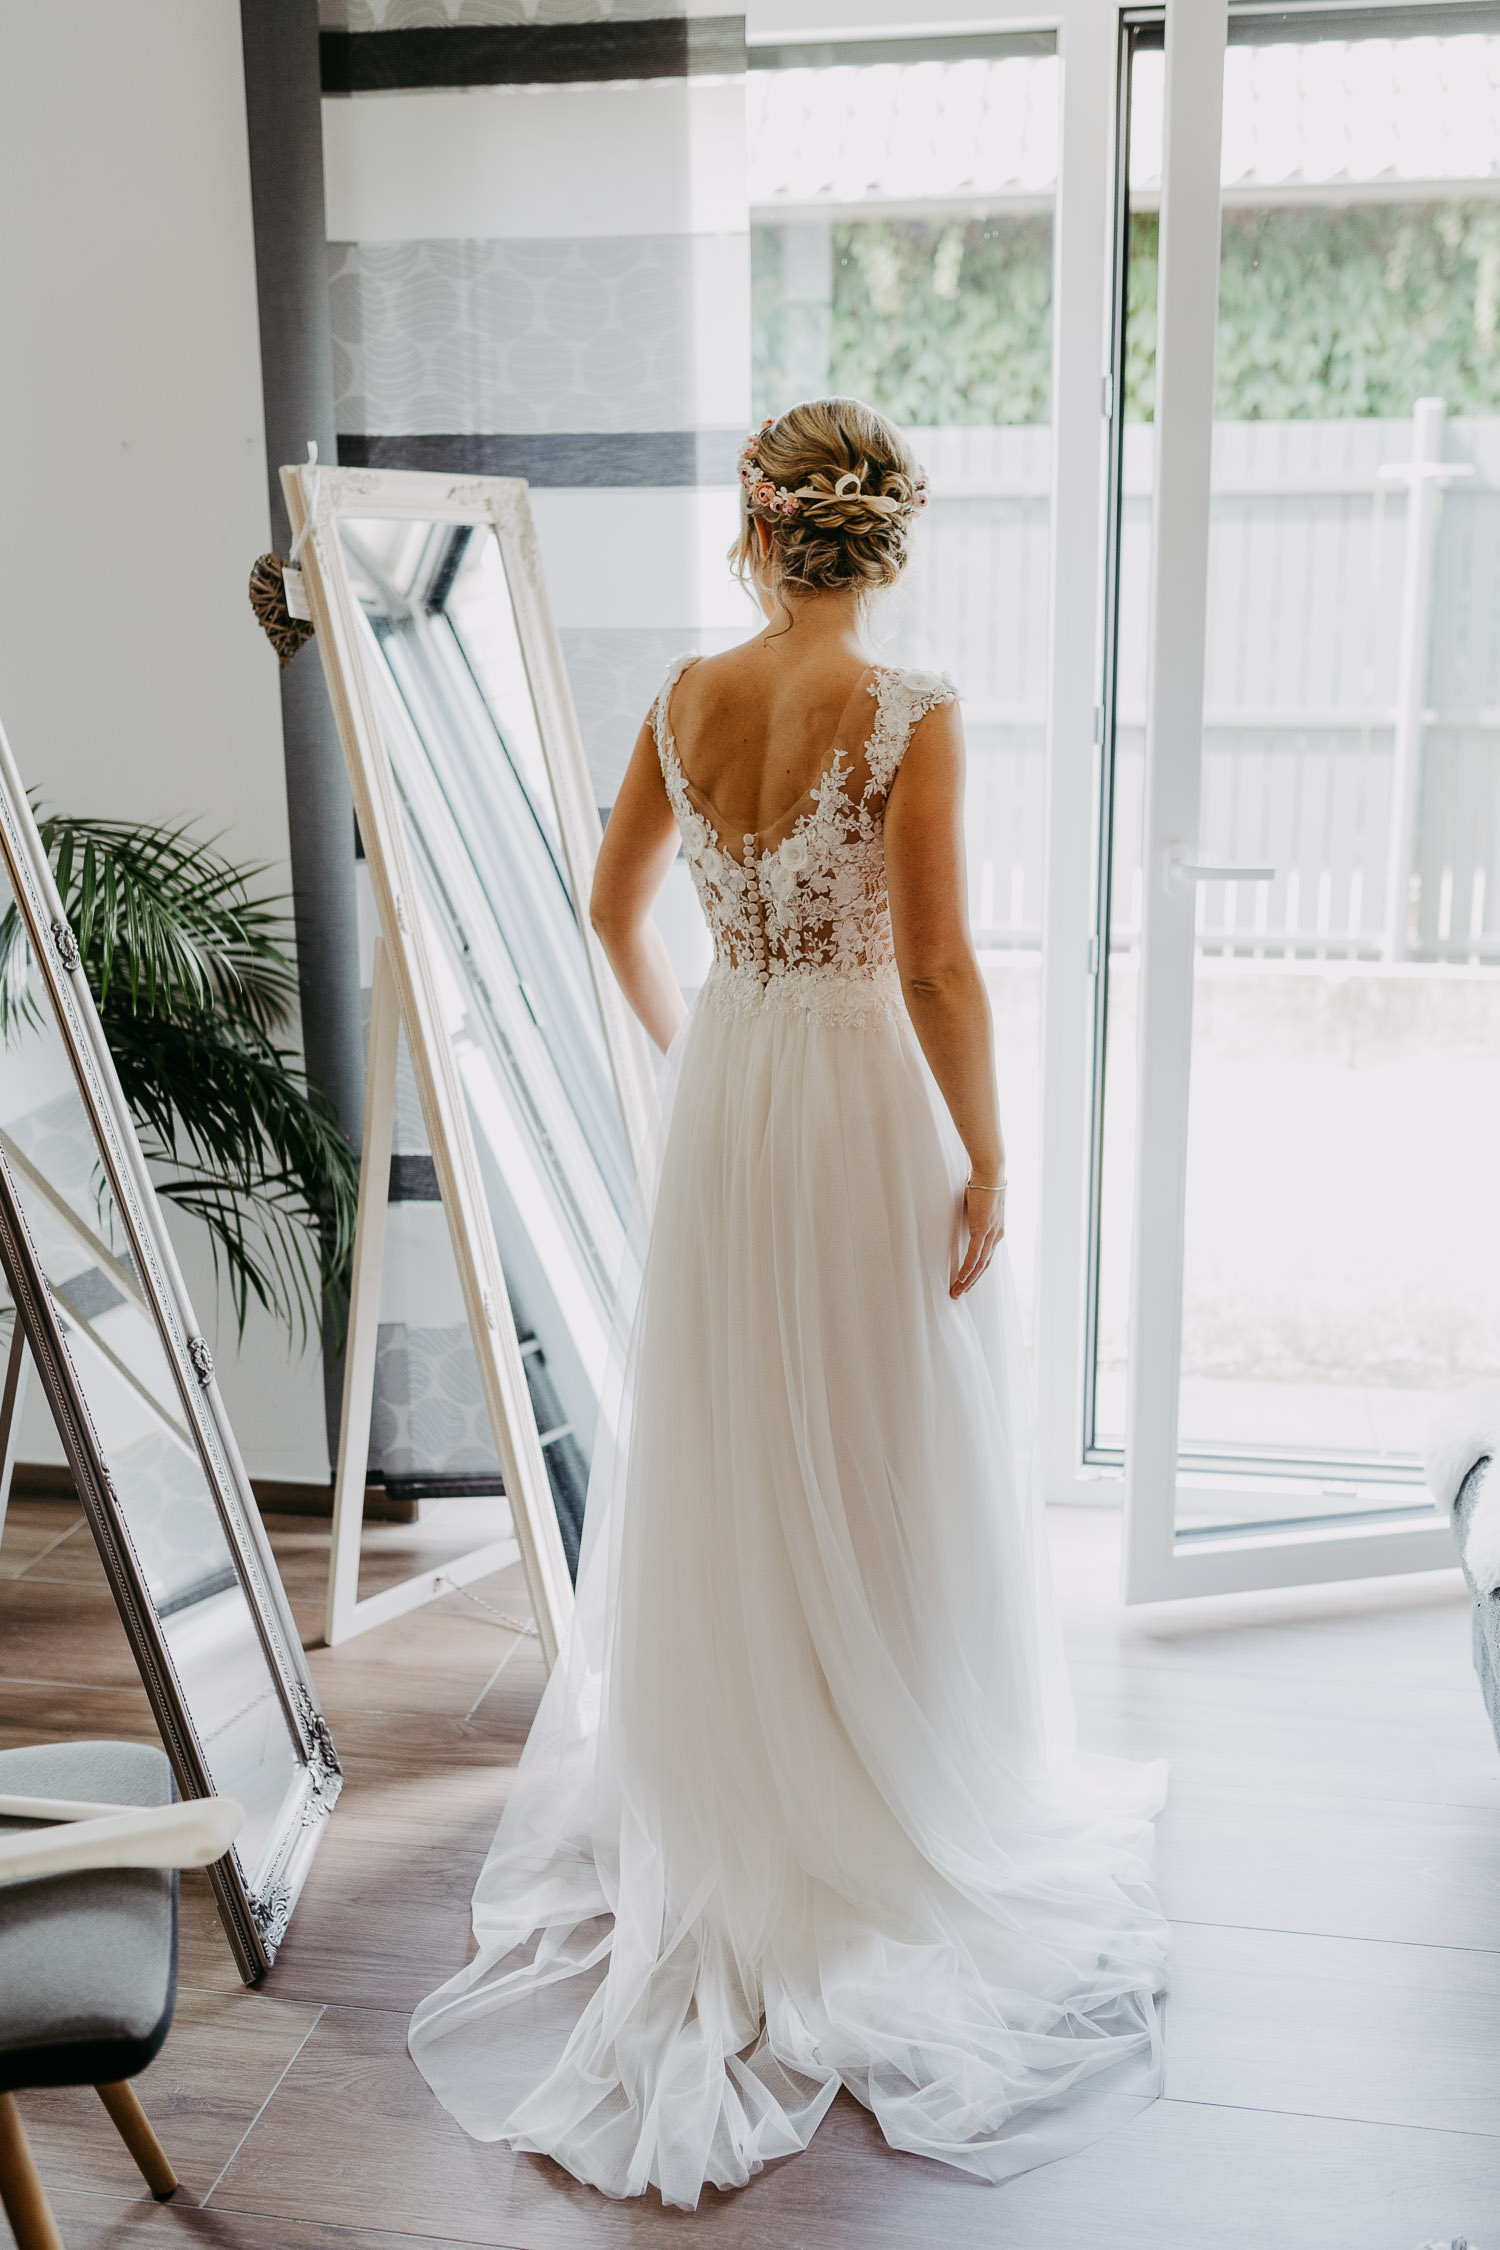 Braut im Hochzeitskleid vorm Spiegel